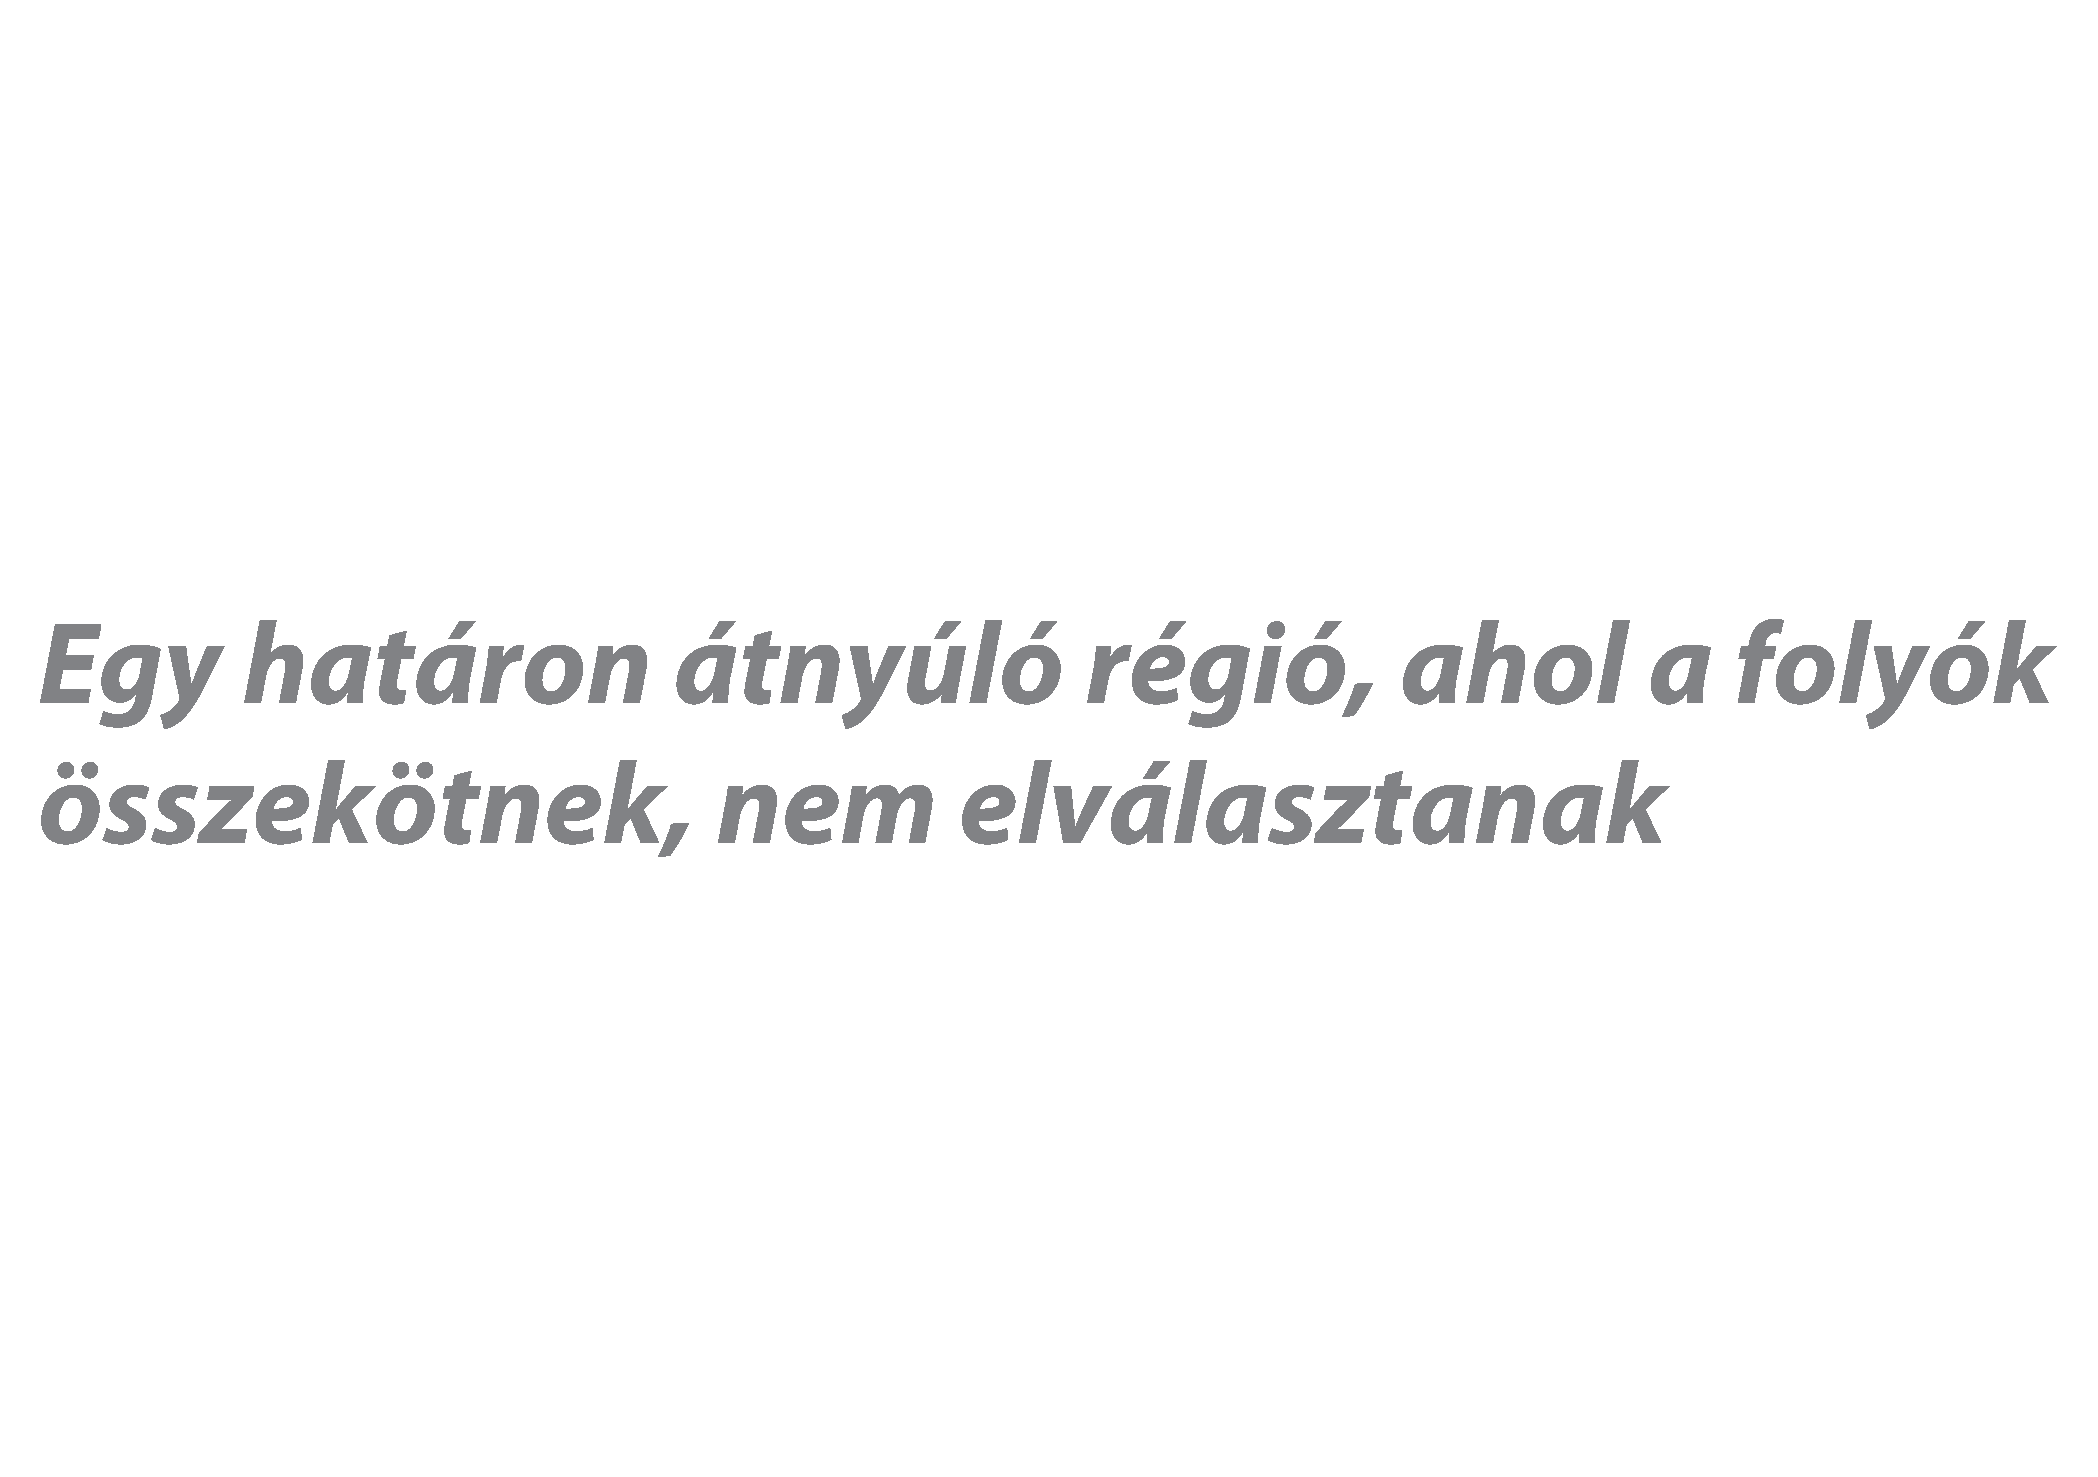 Hungary-Croatia Slogan